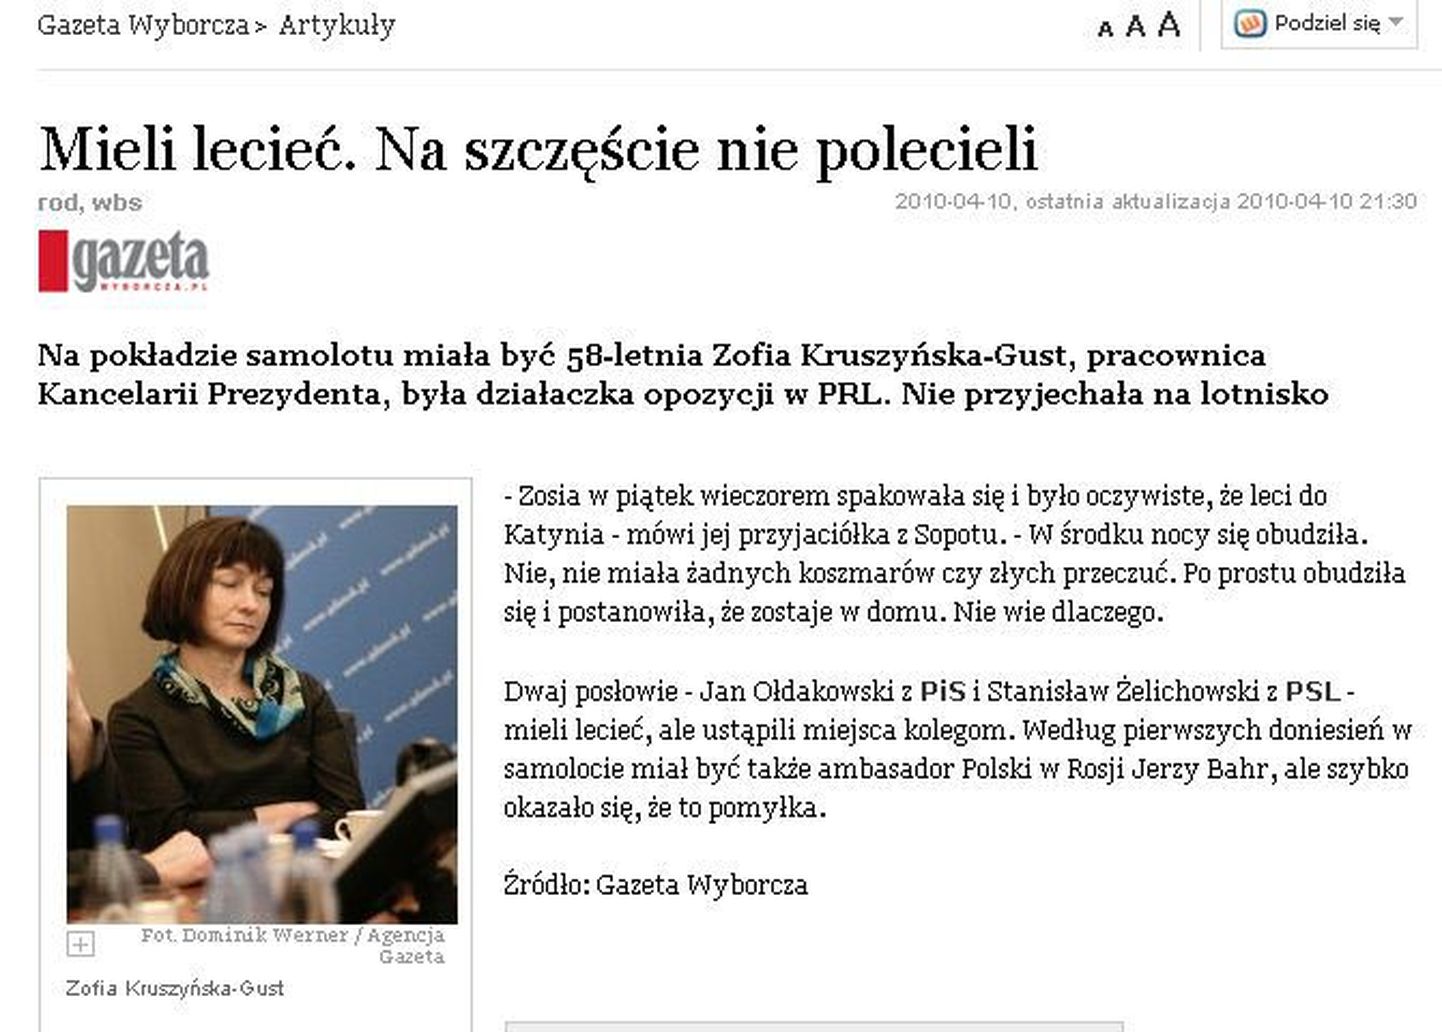 Gazeta Wyborcza võrguväljaande lugu naisest, kes loobus Poola presidendi surmalennust.